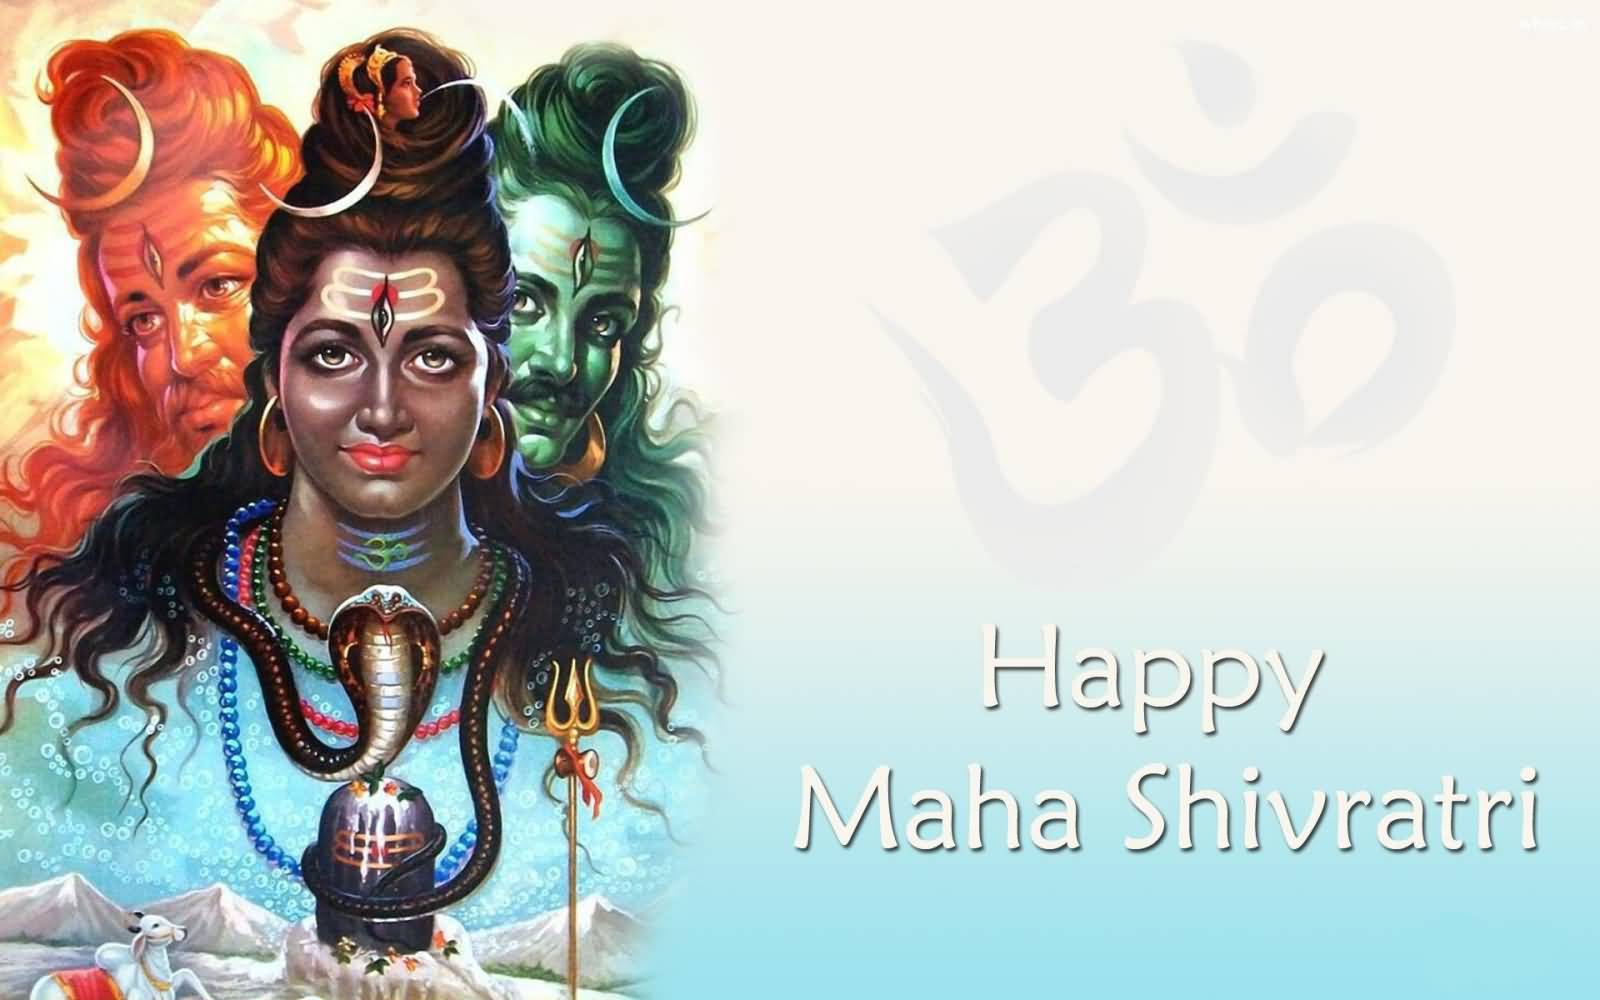 Happy Maha Shivaratri Three Faces Of Lord Shiva Greeting Card